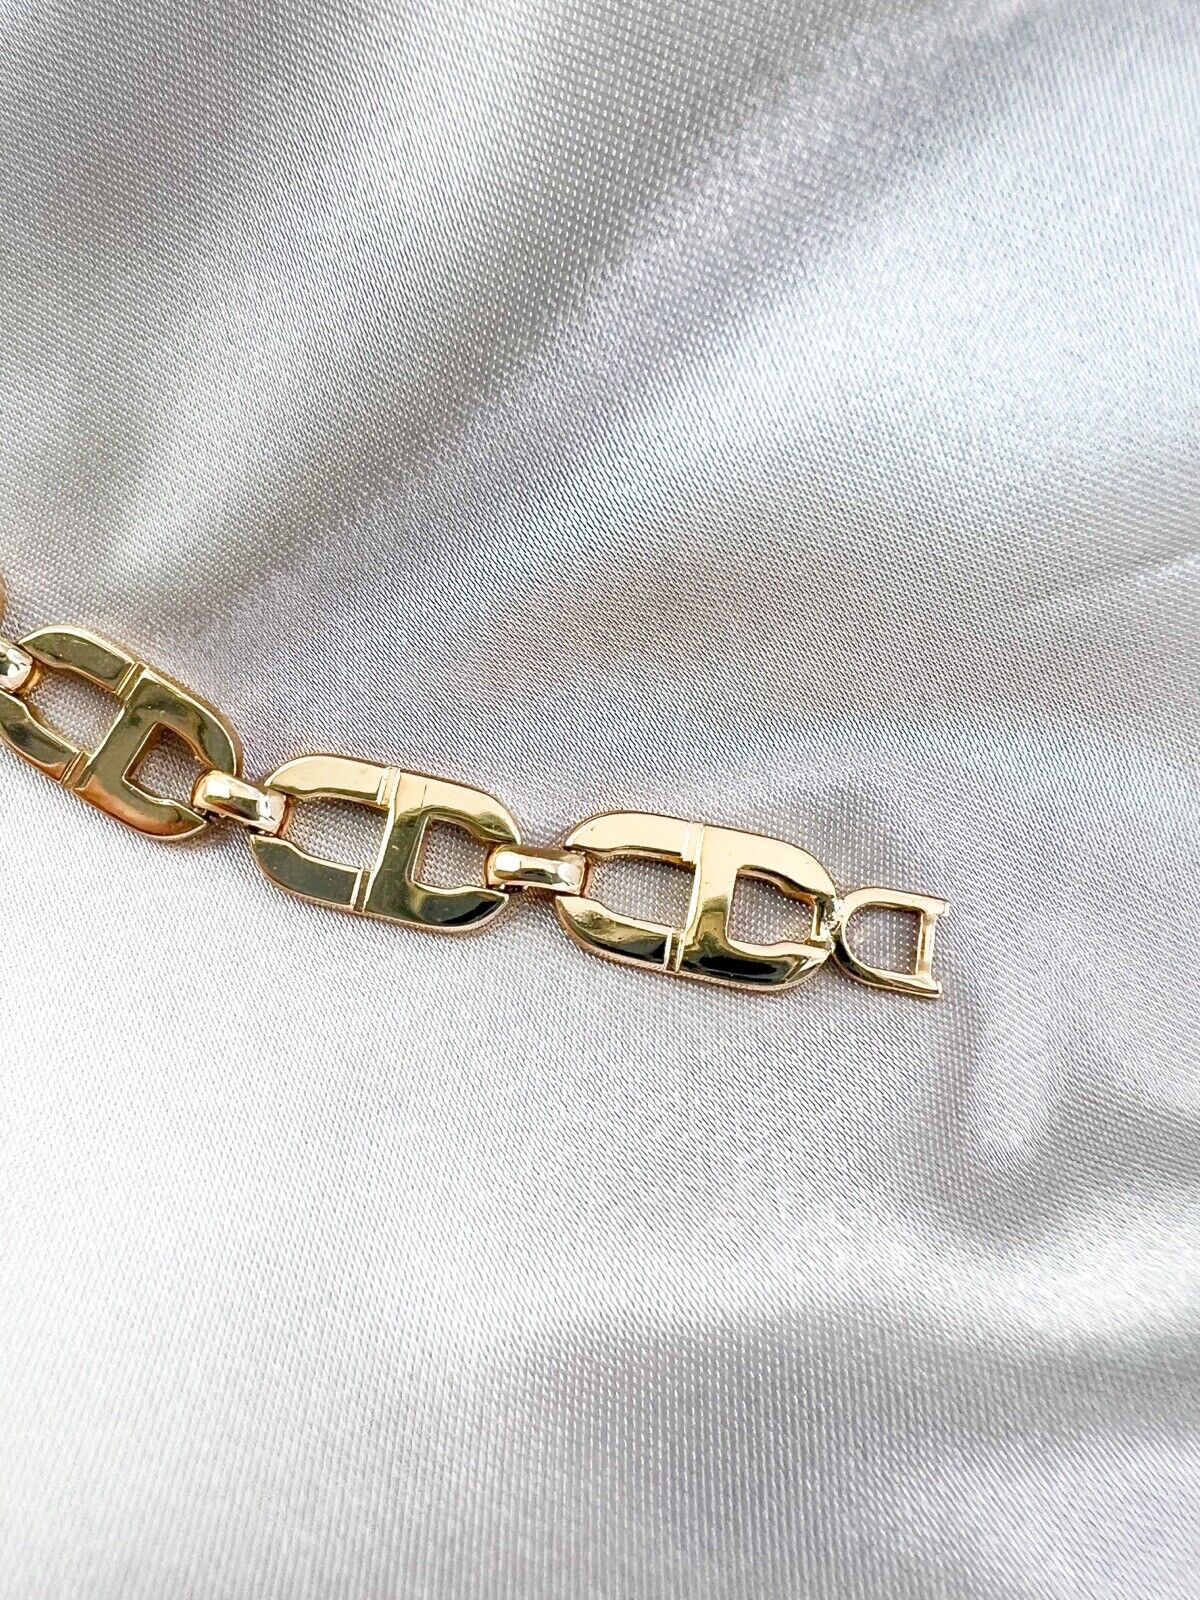 Vintage Christian Dior Bracelet, Gold Tone Bracelet, Chain Bracelet, Charm Bracelet, CD Logo Bracelet, Vintage Bracelet, Personalized Gifts